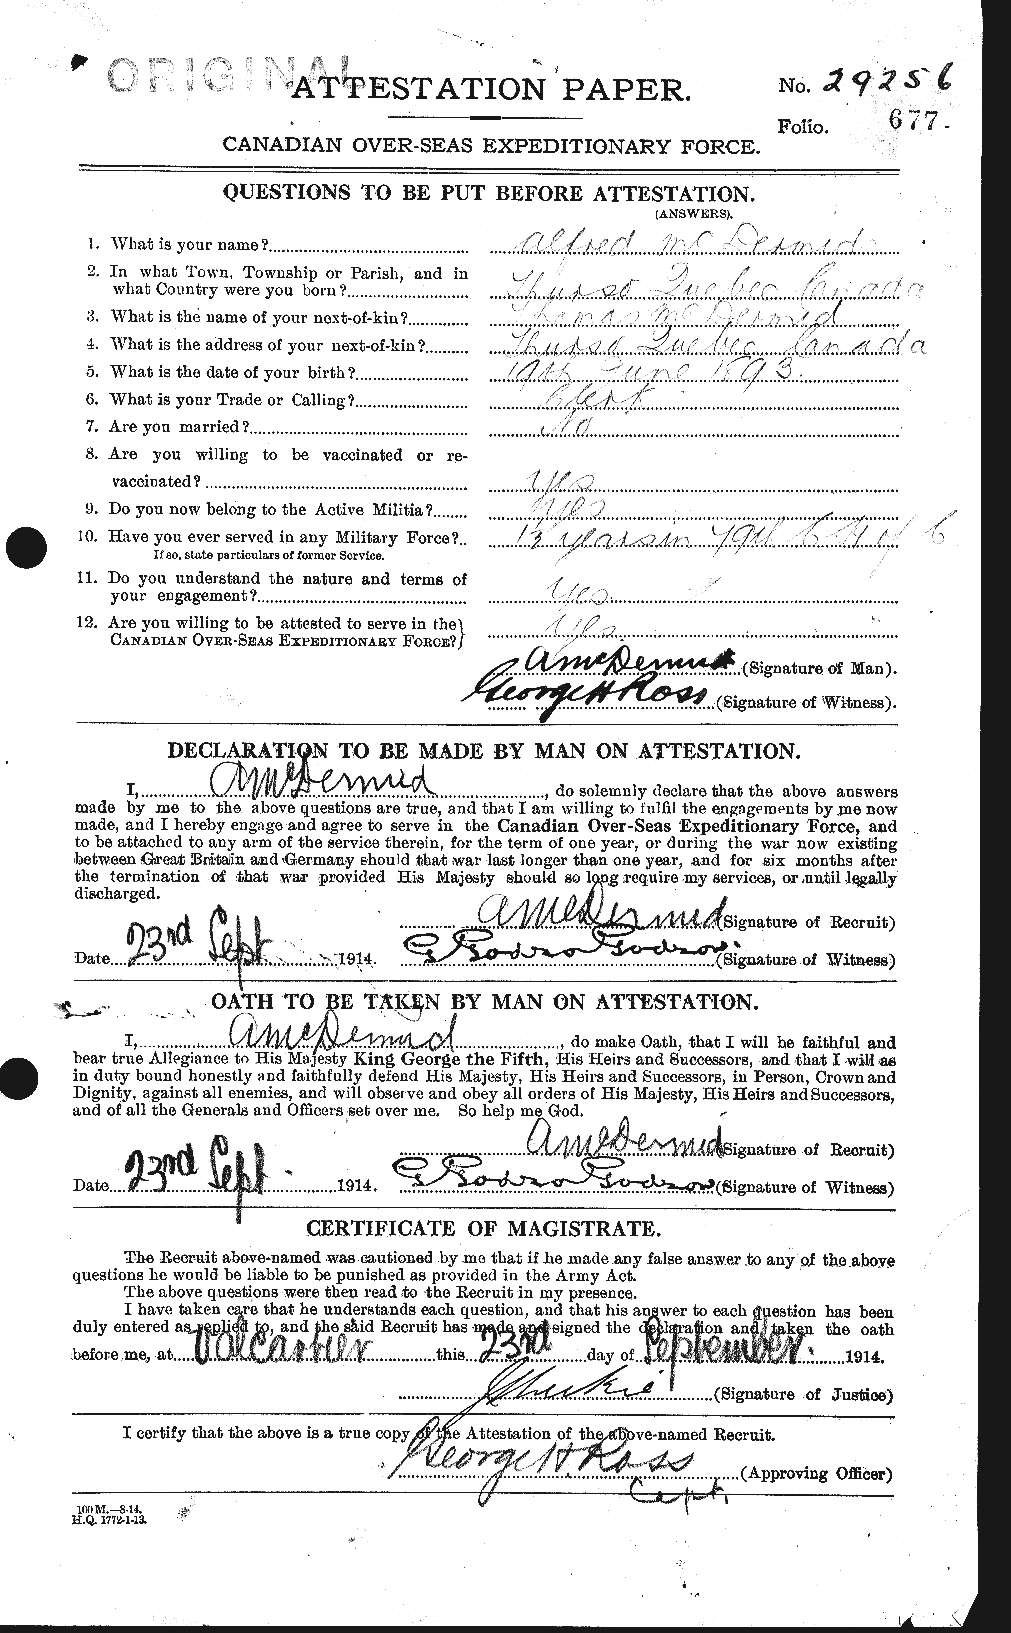 Dossiers du Personnel de la Première Guerre mondiale - CEC 136168a